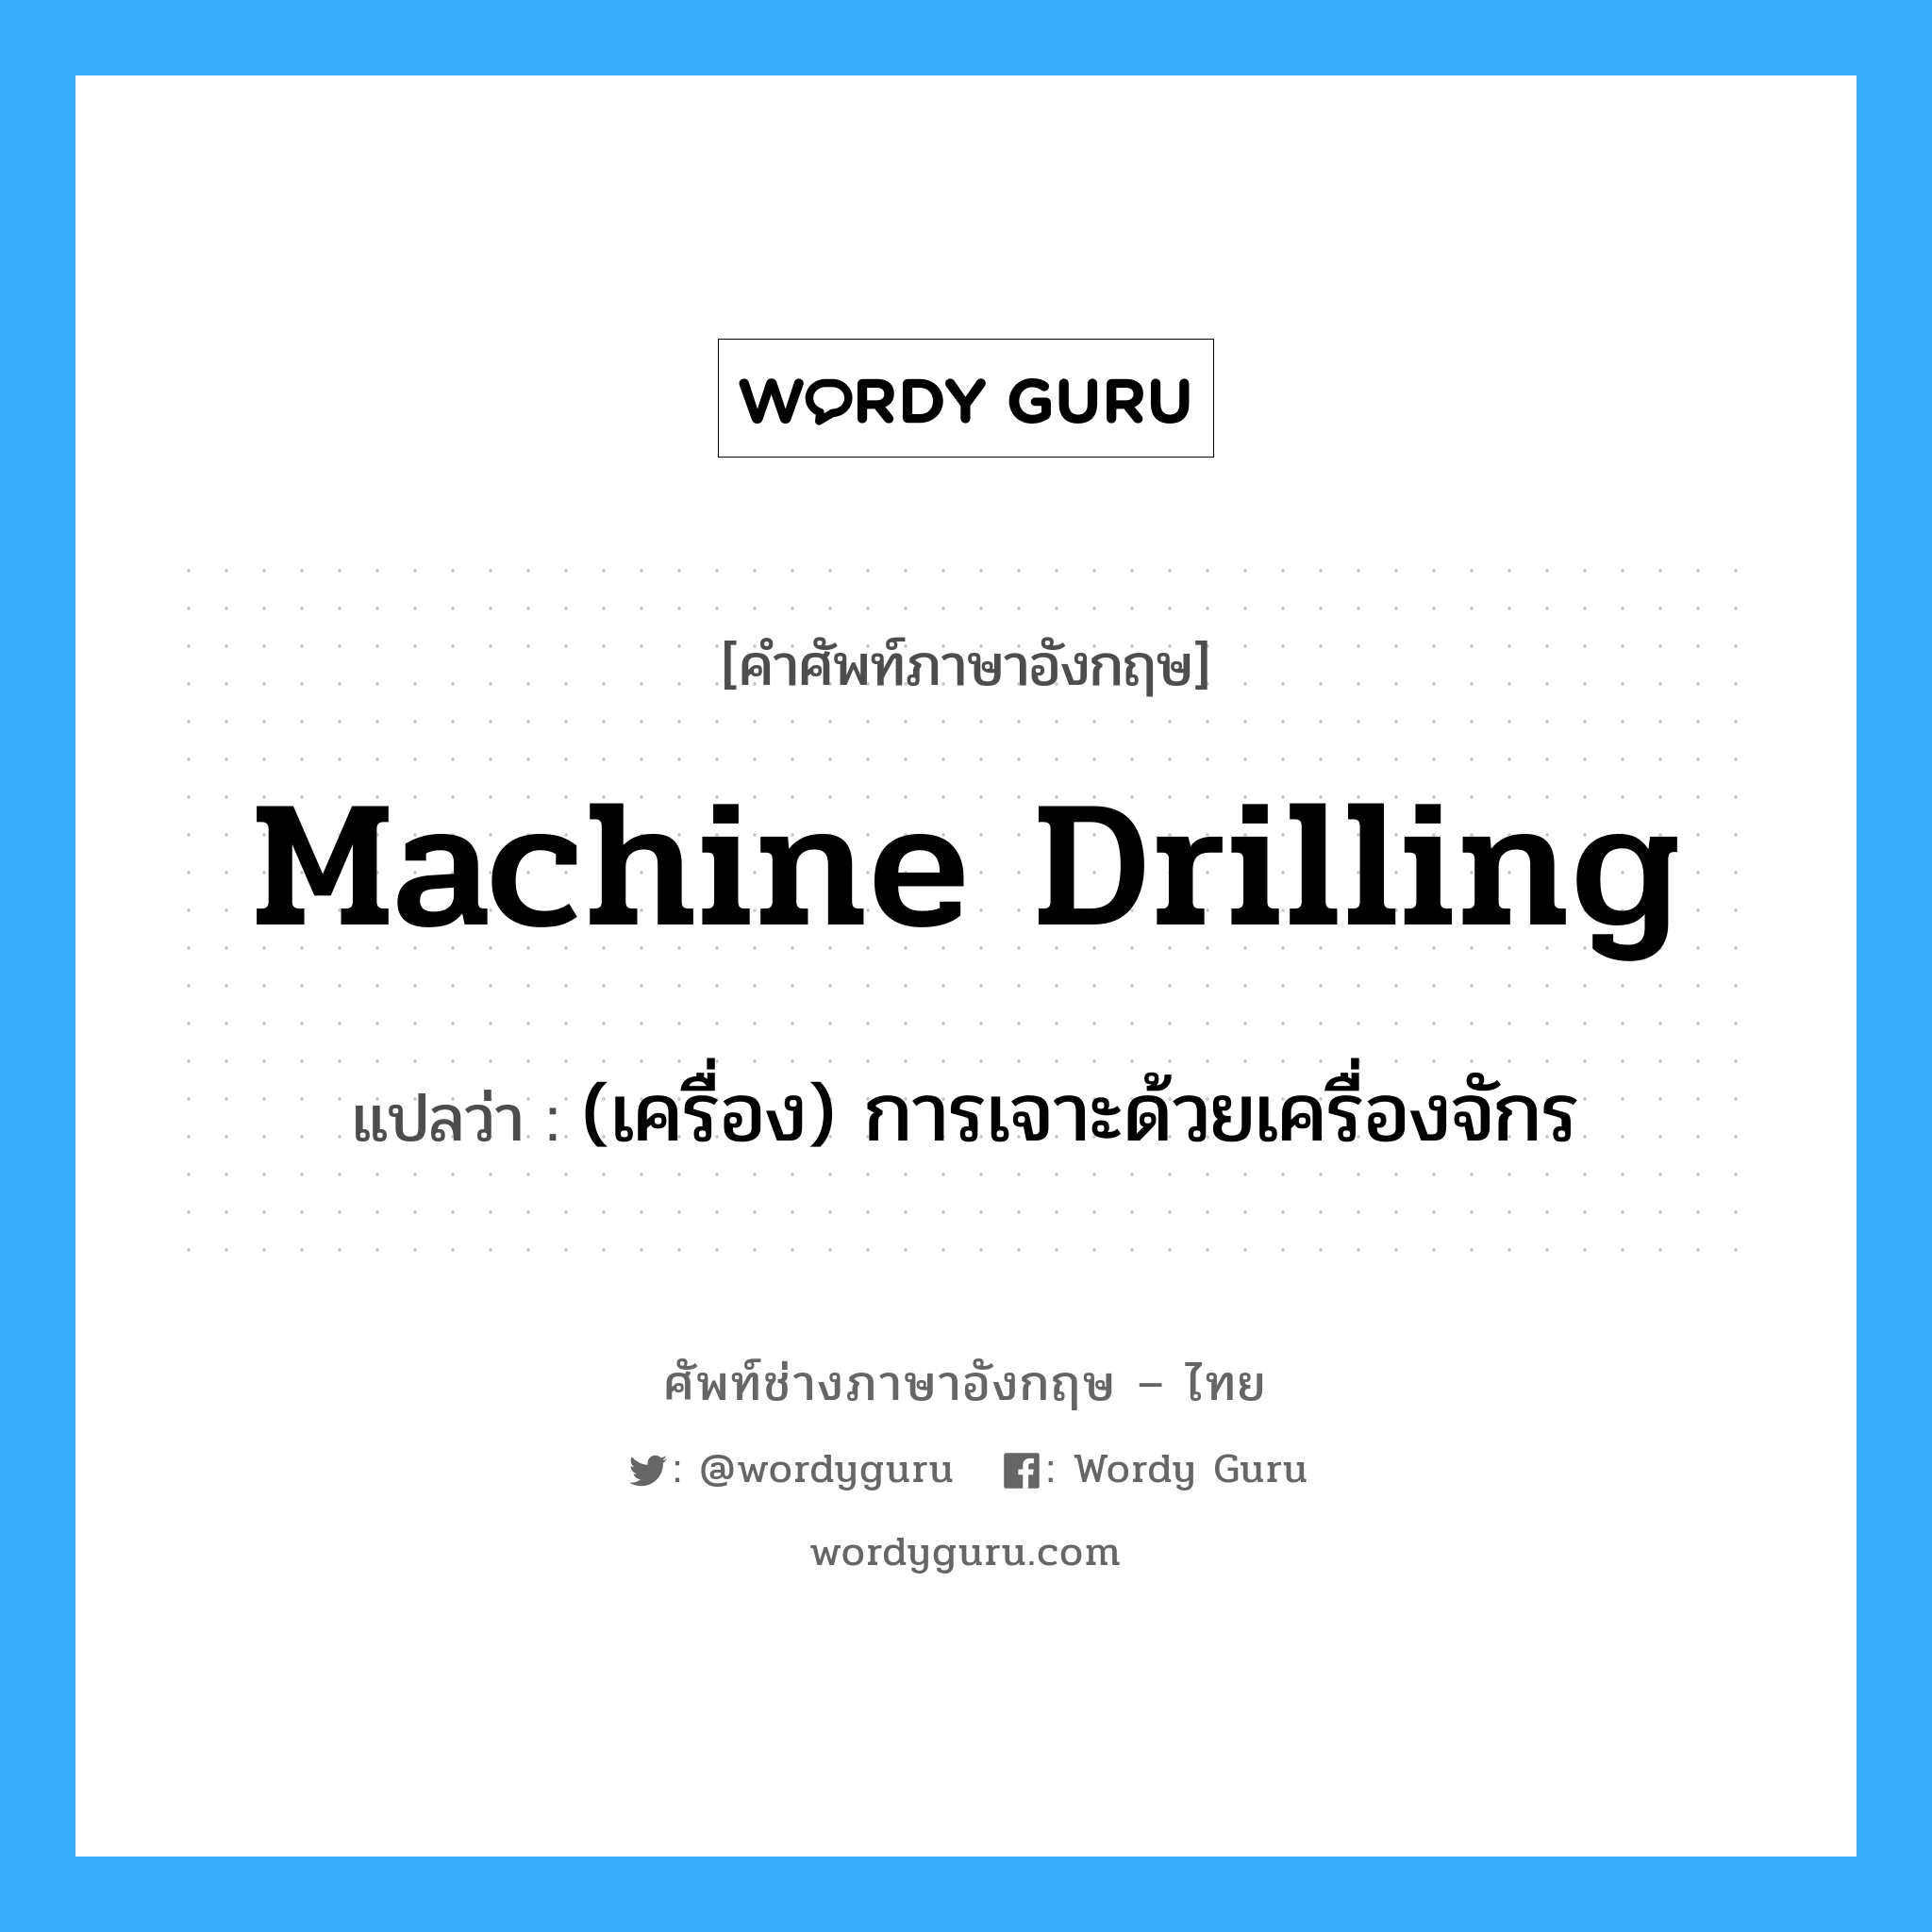 (เครื่อง) การเจาะด้วยเครื่องจักร ภาษาอังกฤษ?, คำศัพท์ช่างภาษาอังกฤษ - ไทย (เครื่อง) การเจาะด้วยเครื่องจักร คำศัพท์ภาษาอังกฤษ (เครื่อง) การเจาะด้วยเครื่องจักร แปลว่า machine drilling